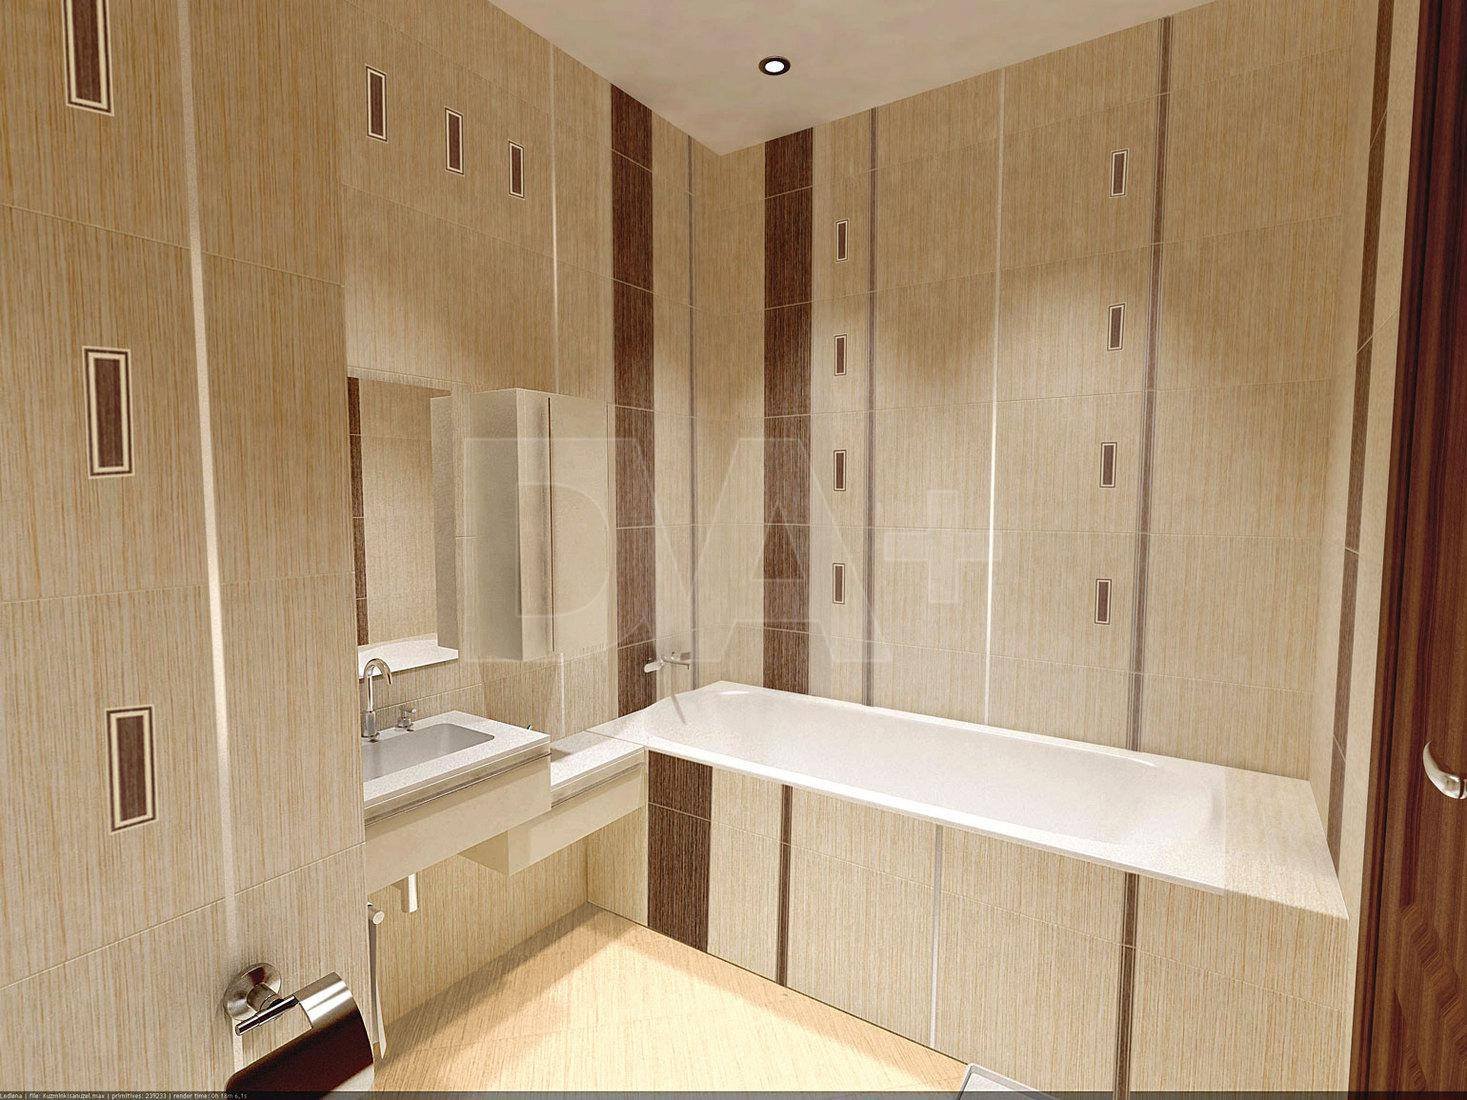 Мдф панели для ванной комнаты. Панели в ванную комнату. Стеновые панели для ванной комнаты. Стеновые панели для санузла. МДФ панели для ванной.